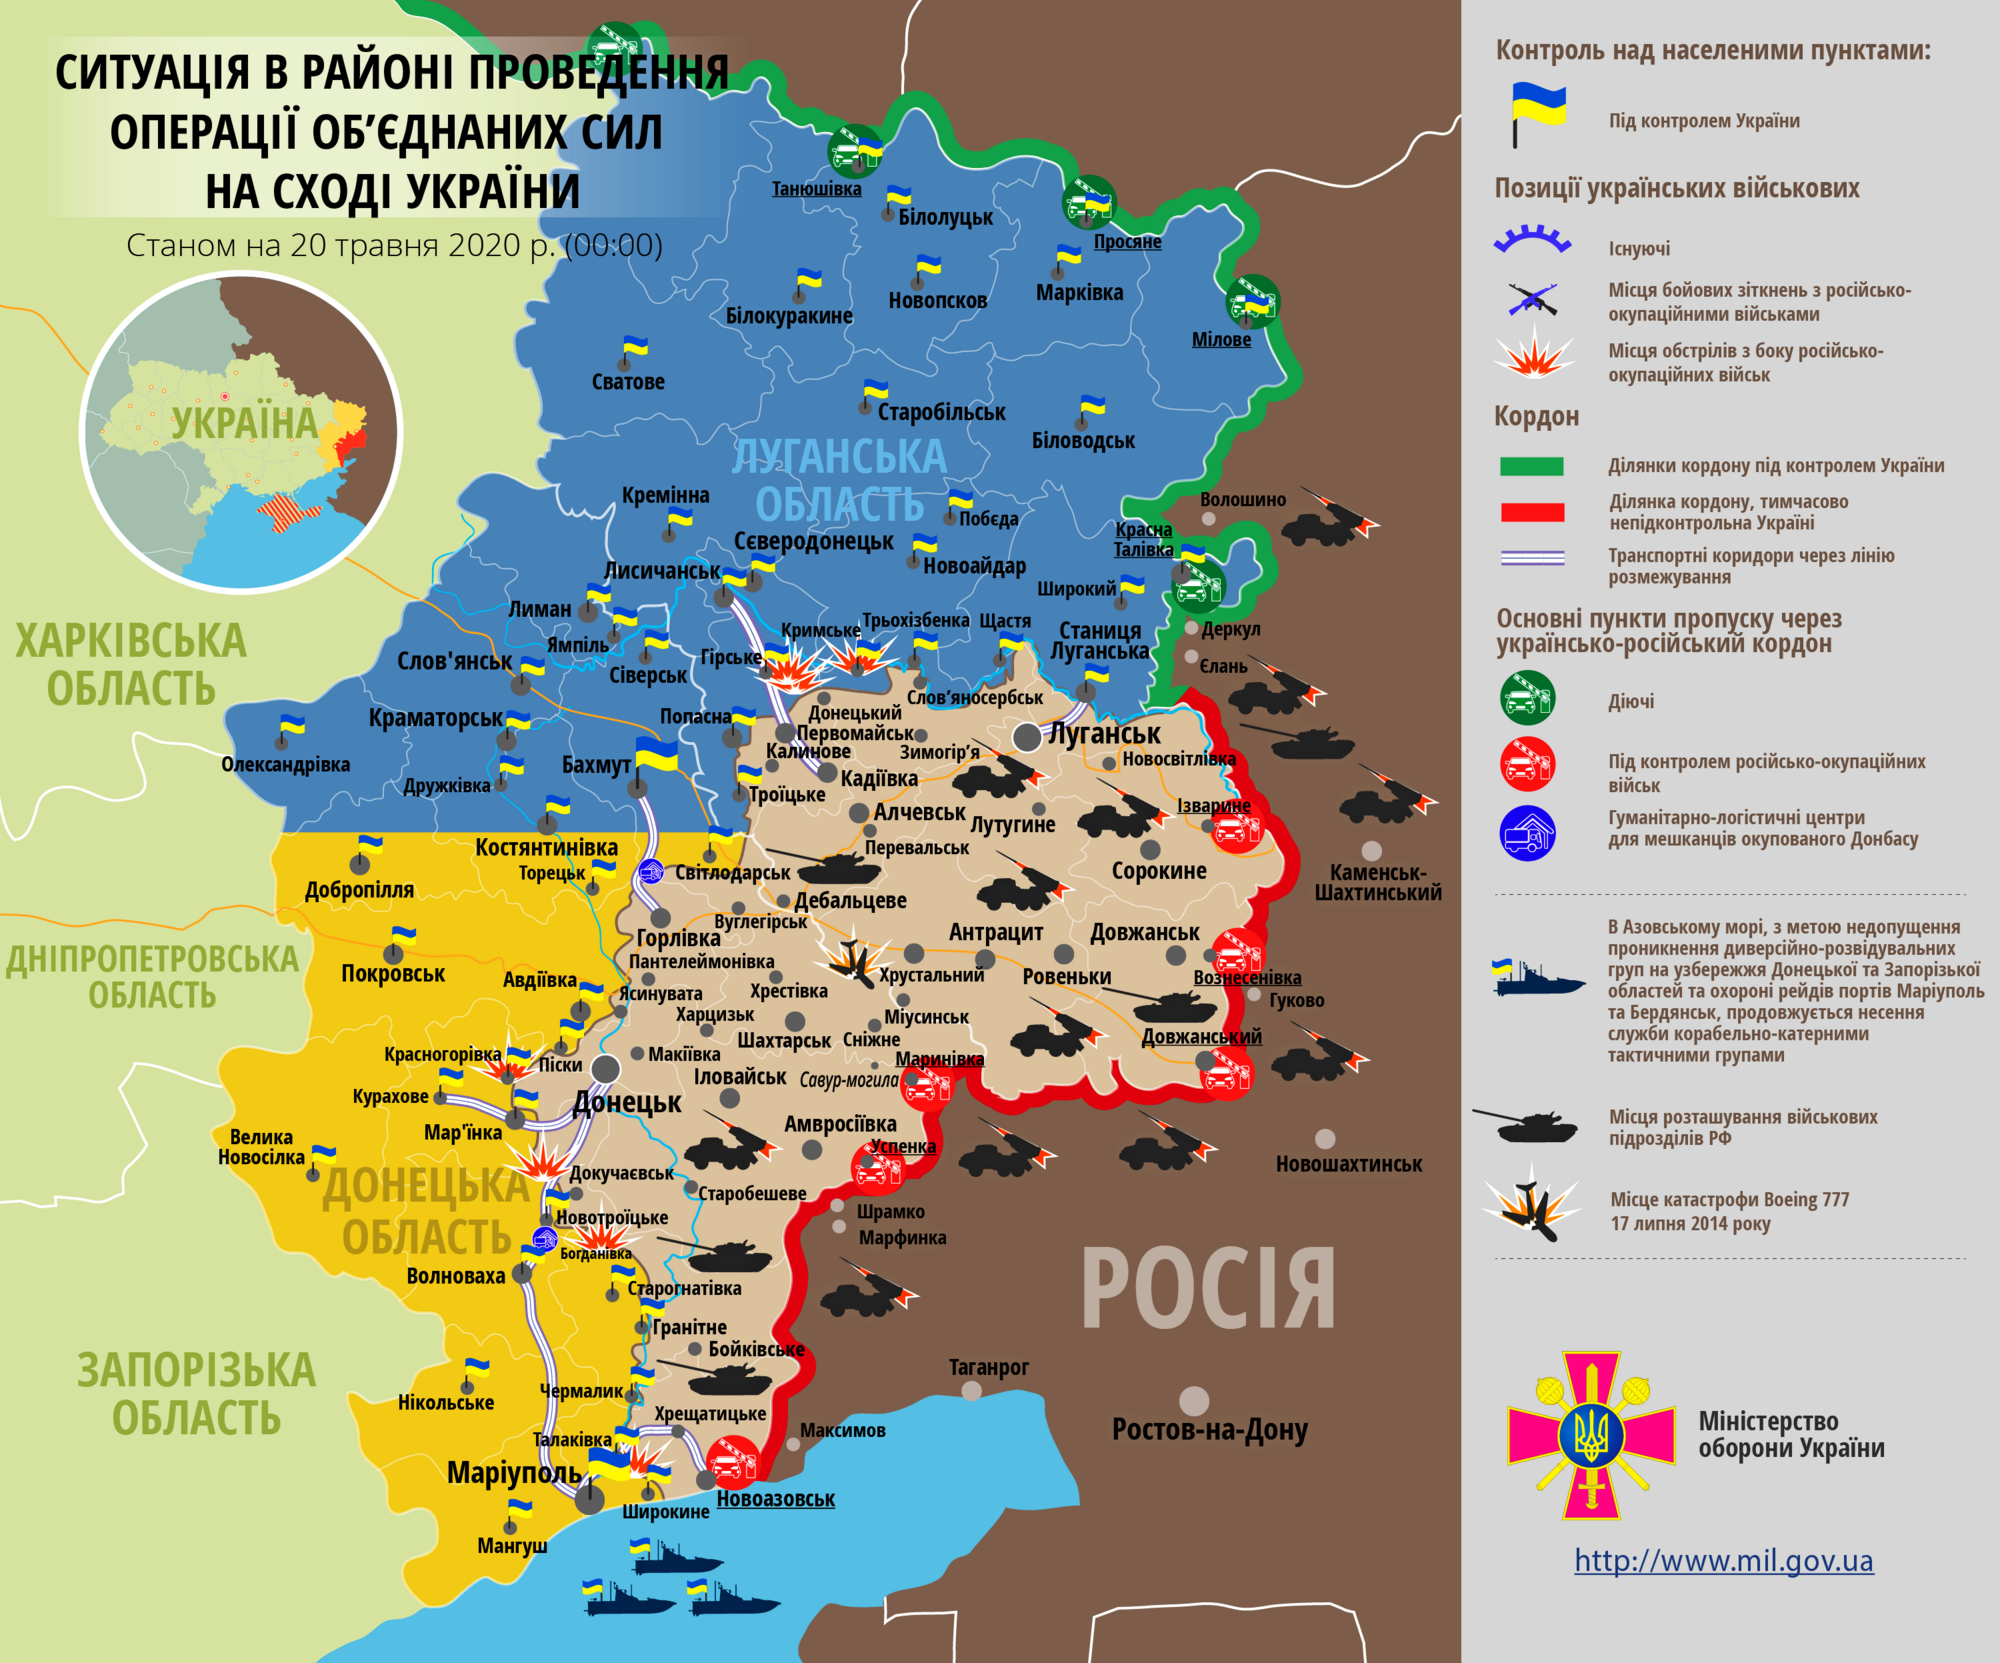 Ситуация в зоне проведения ООС на Донбассе 20 мая